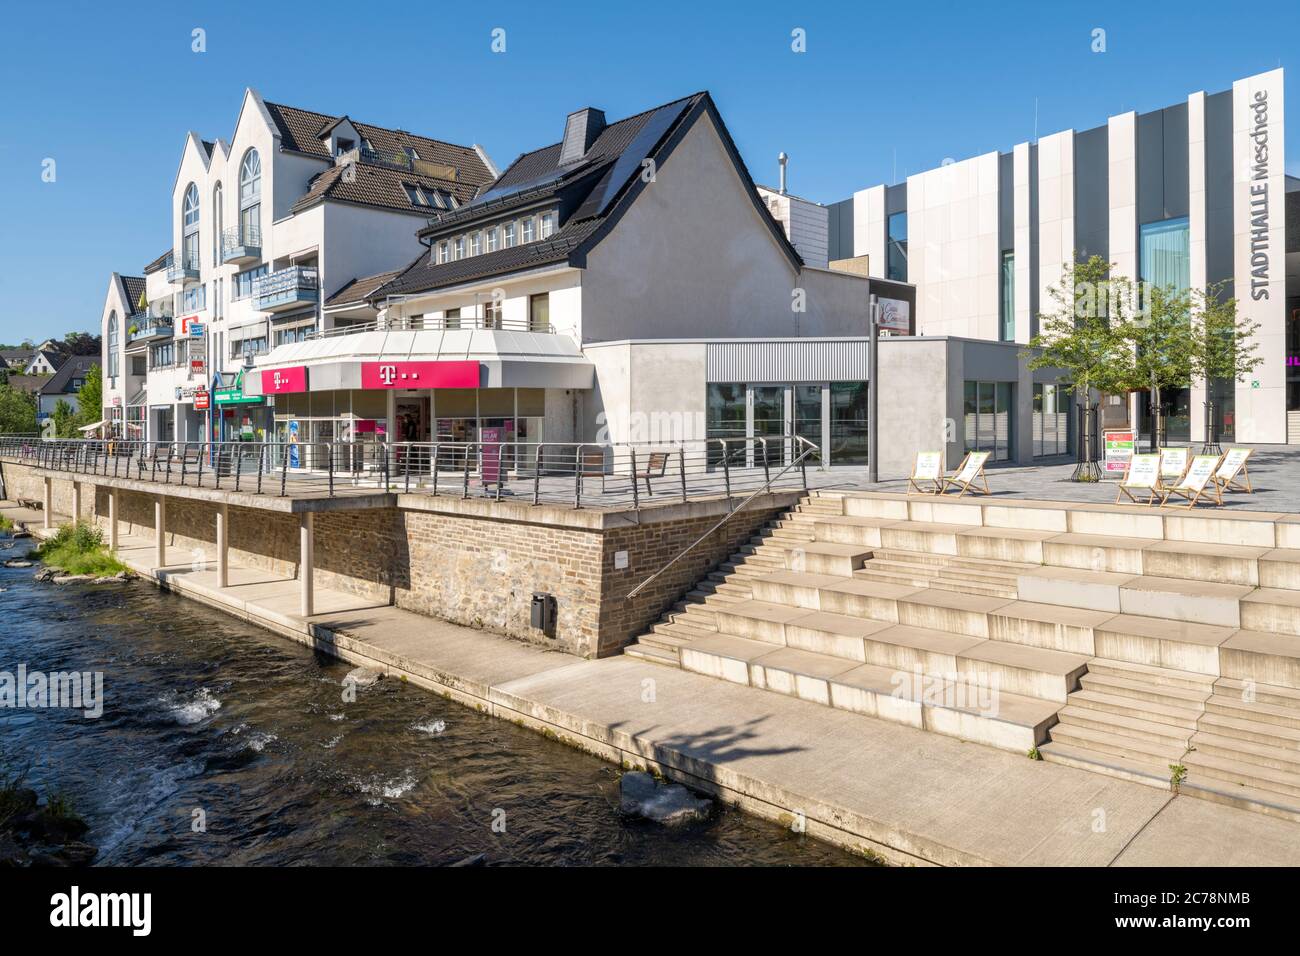 Deutschland, Nordrhein-Westfalen, Hochsauerlandkreis, Meschede, Architektur an der Henne (Winziger Platz) mit Stadthalle Stock Photo